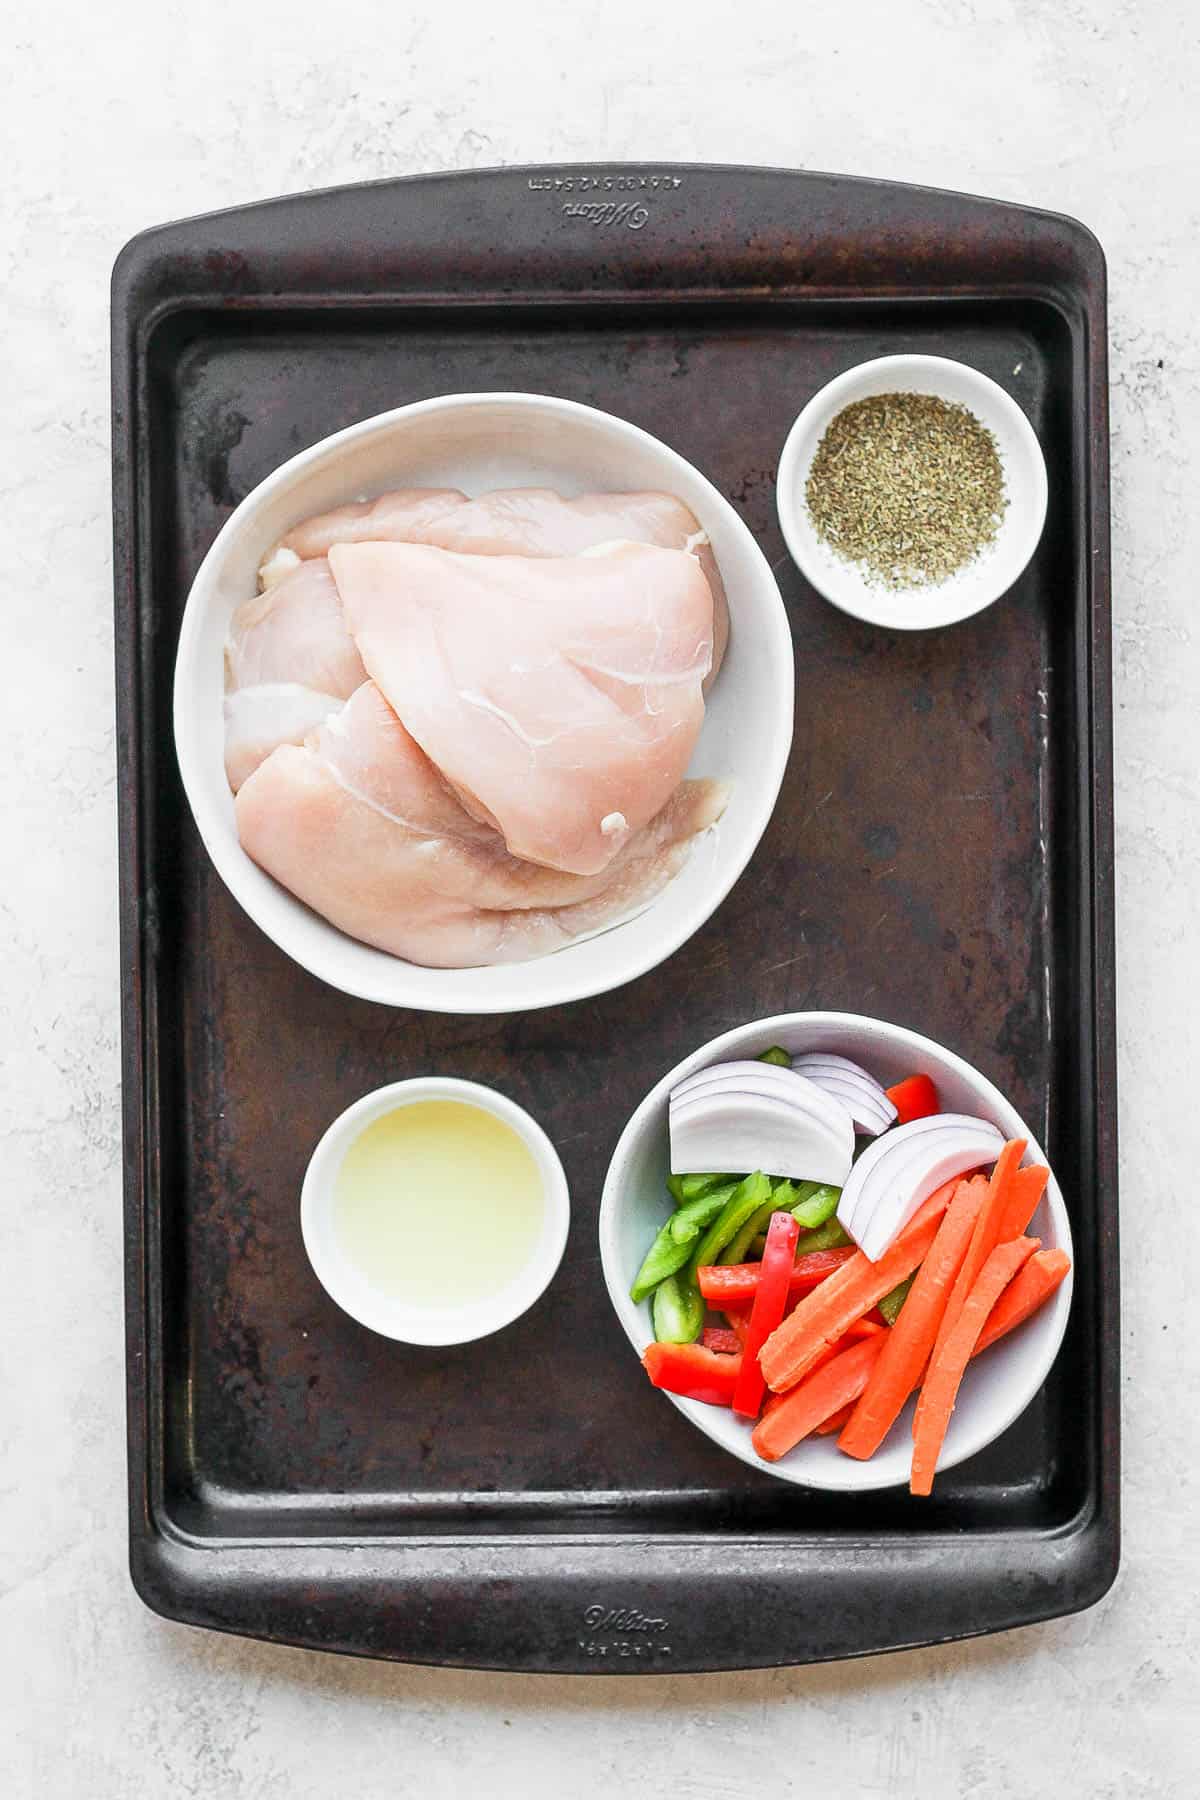 Ingredients to make sheet pan meals